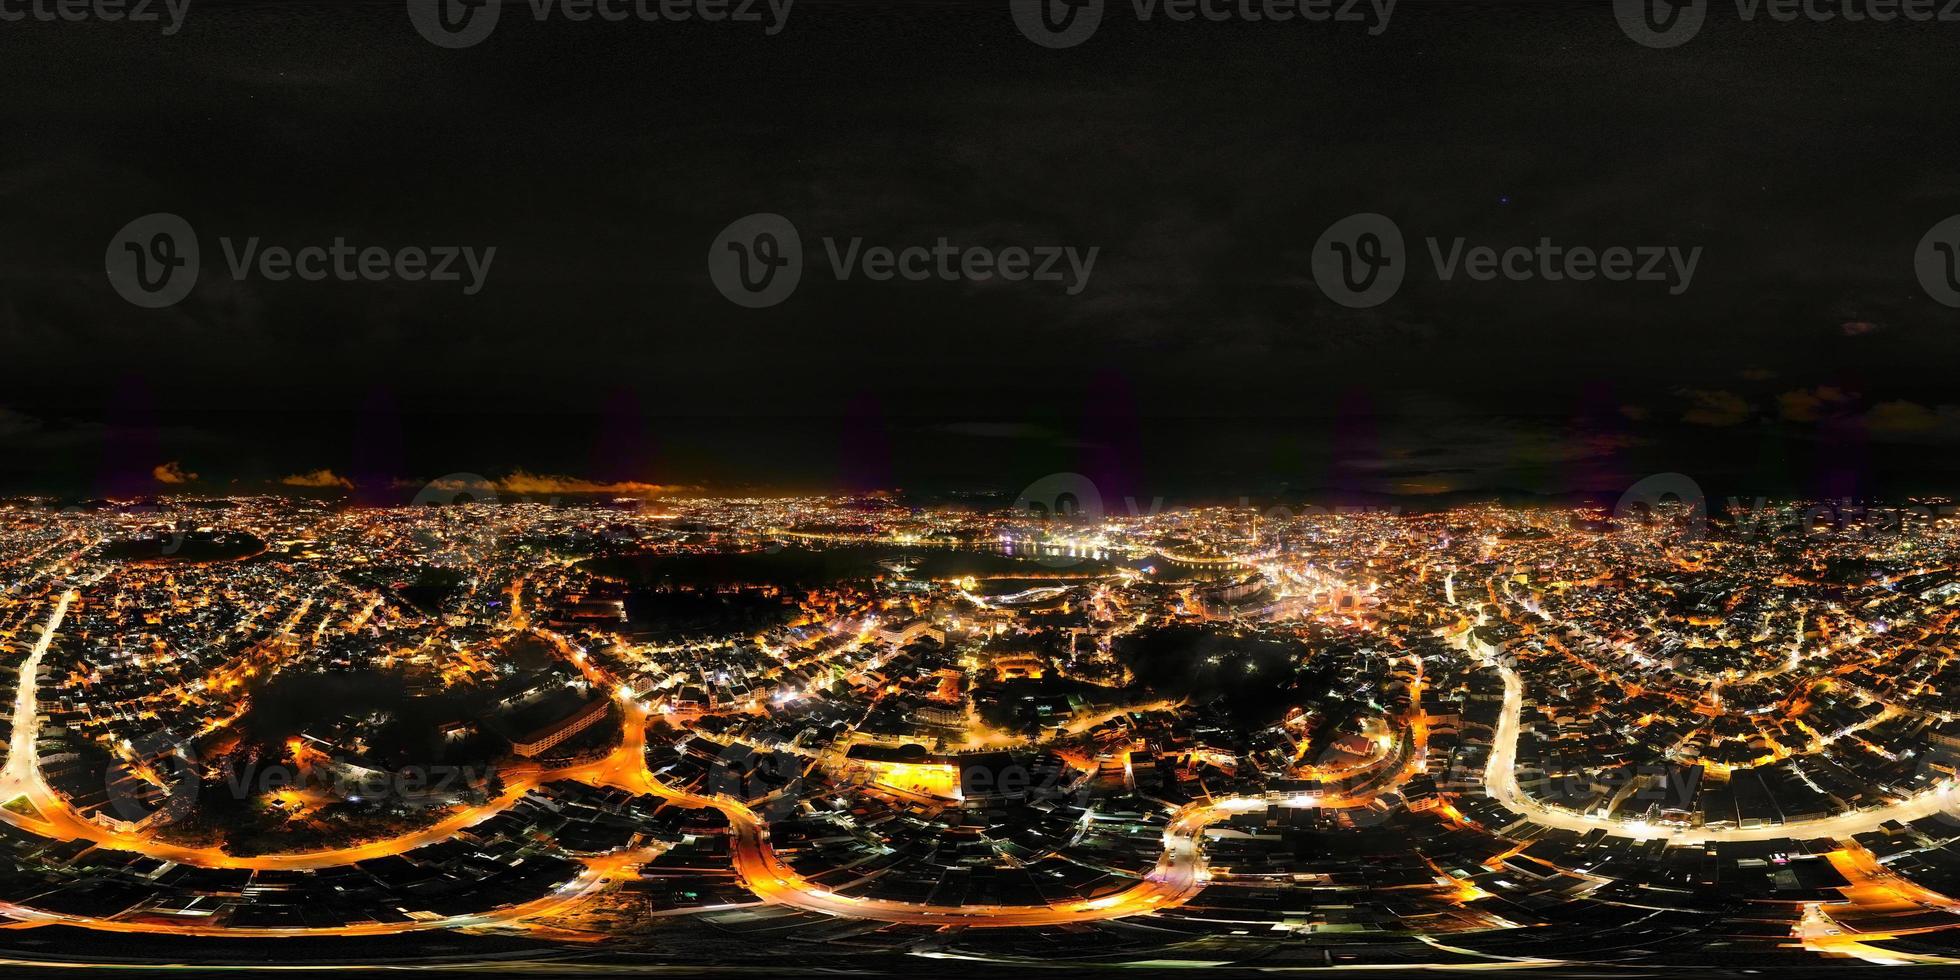 360 panorama de brillante Noche paisaje urbano en da lat ciudad, Vietnam un cautivador ver de iluminado calles y rascacielos debajo el estrellado noche cielo foto